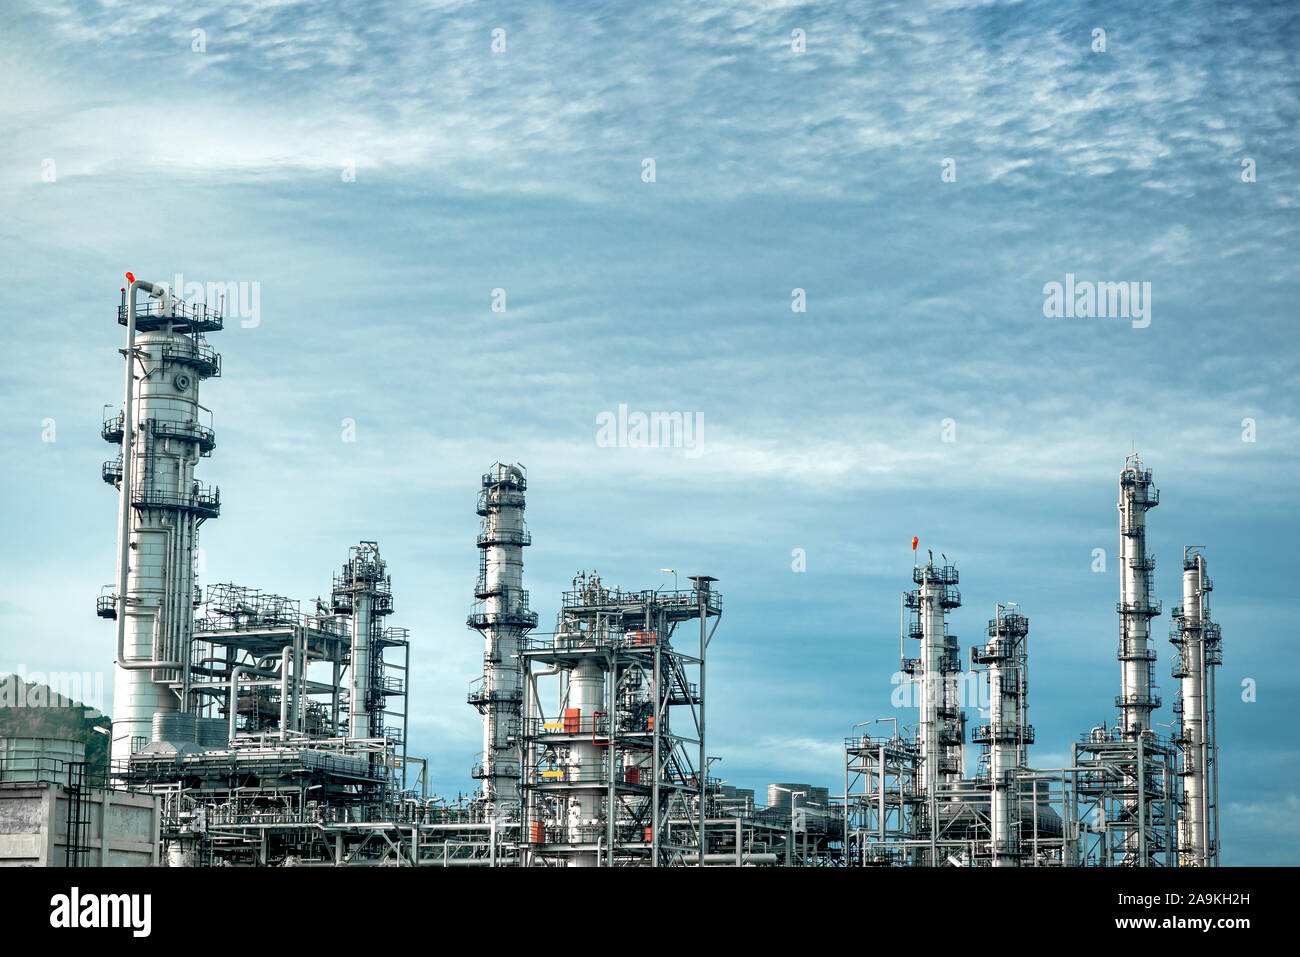 Cerrar vista Industrial en forma de la planta de refinería de petróleo de la zona industrial con el amanecer y el cielo nublado Foto de stock